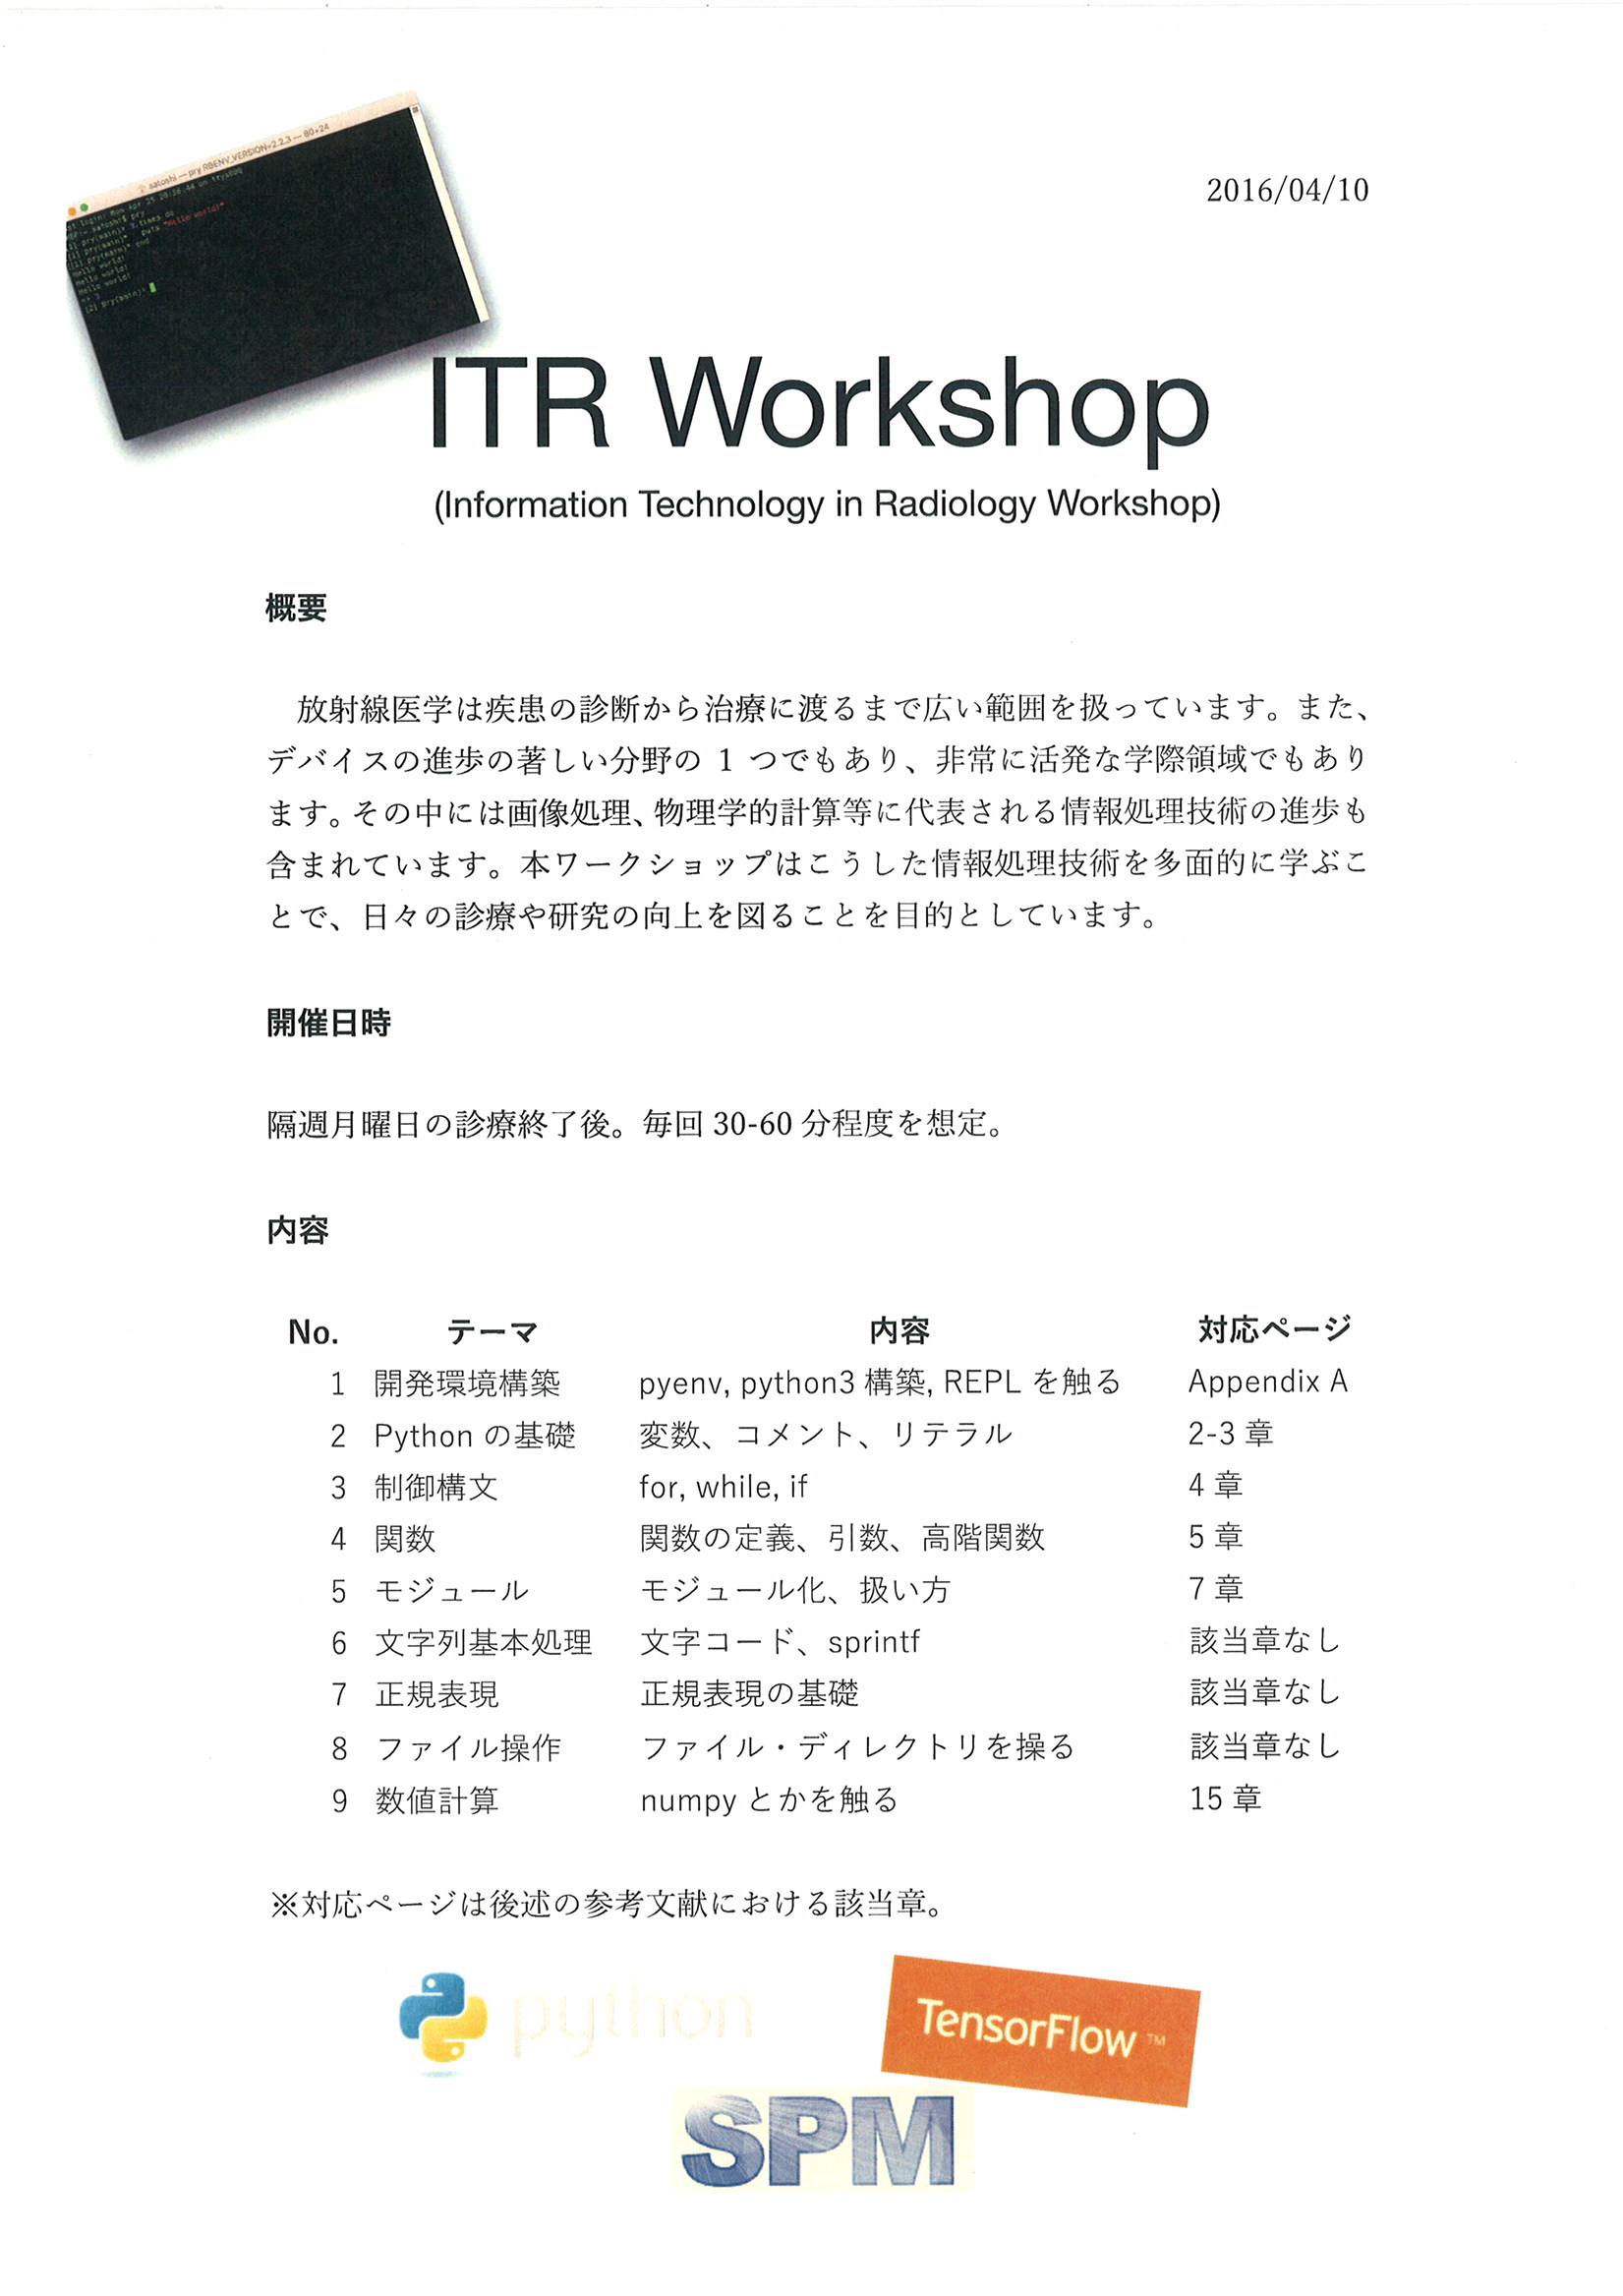 ITR_workshop概要_1 (2)